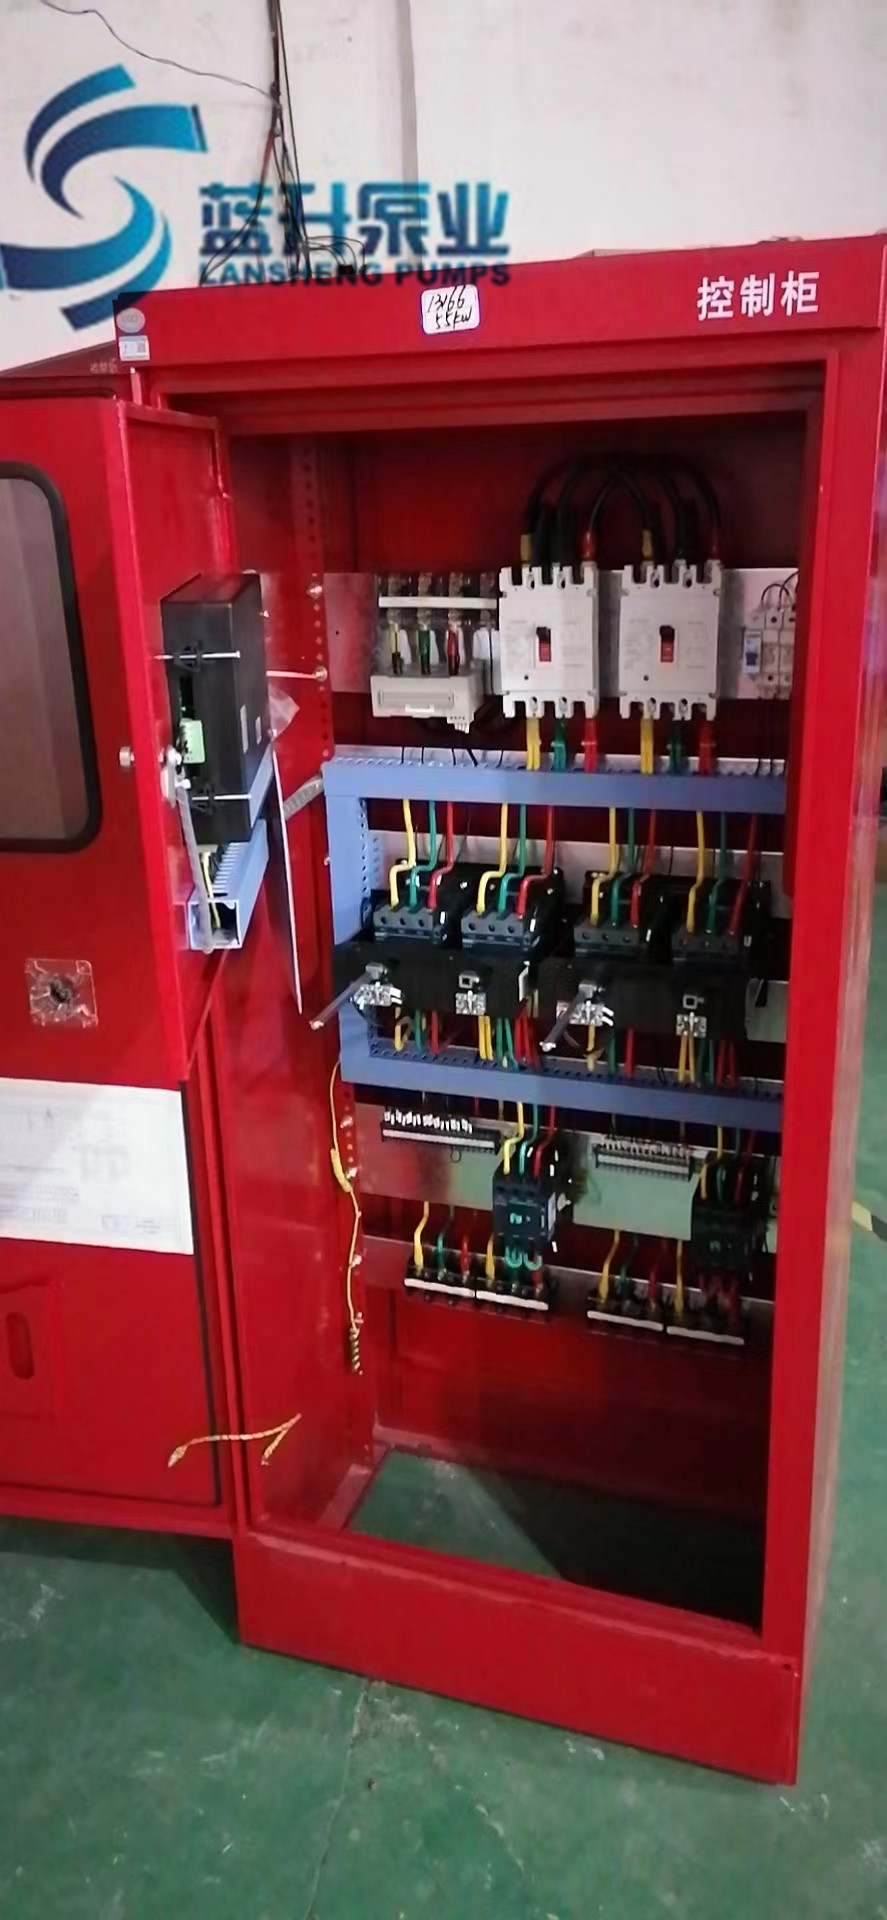 山东济南淄博消防泵机械应急启动控制柜功能说明